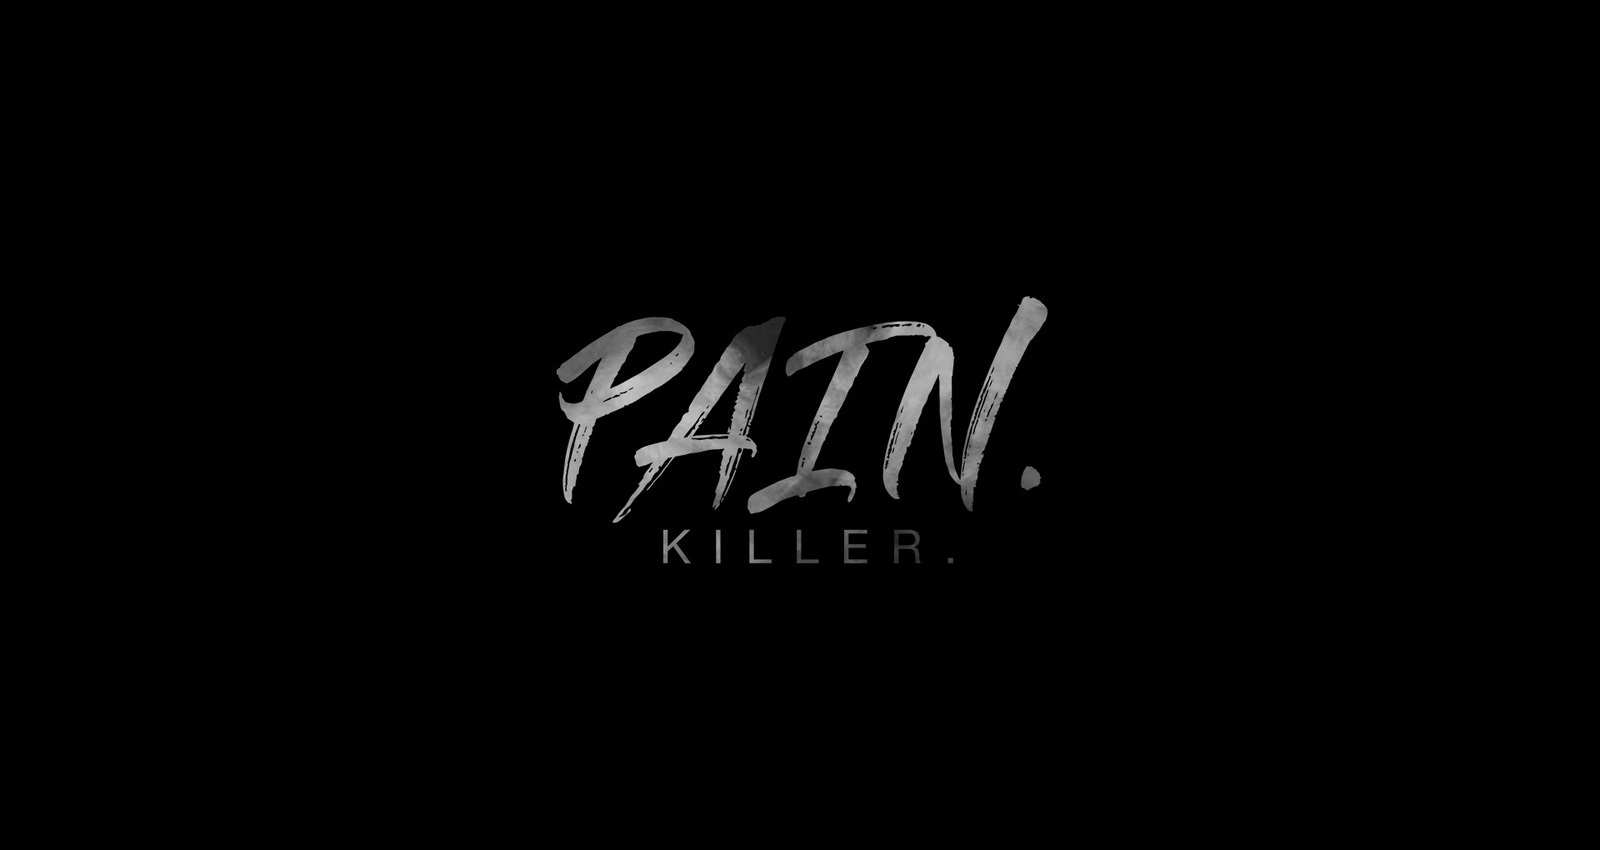 Pain. Killer.